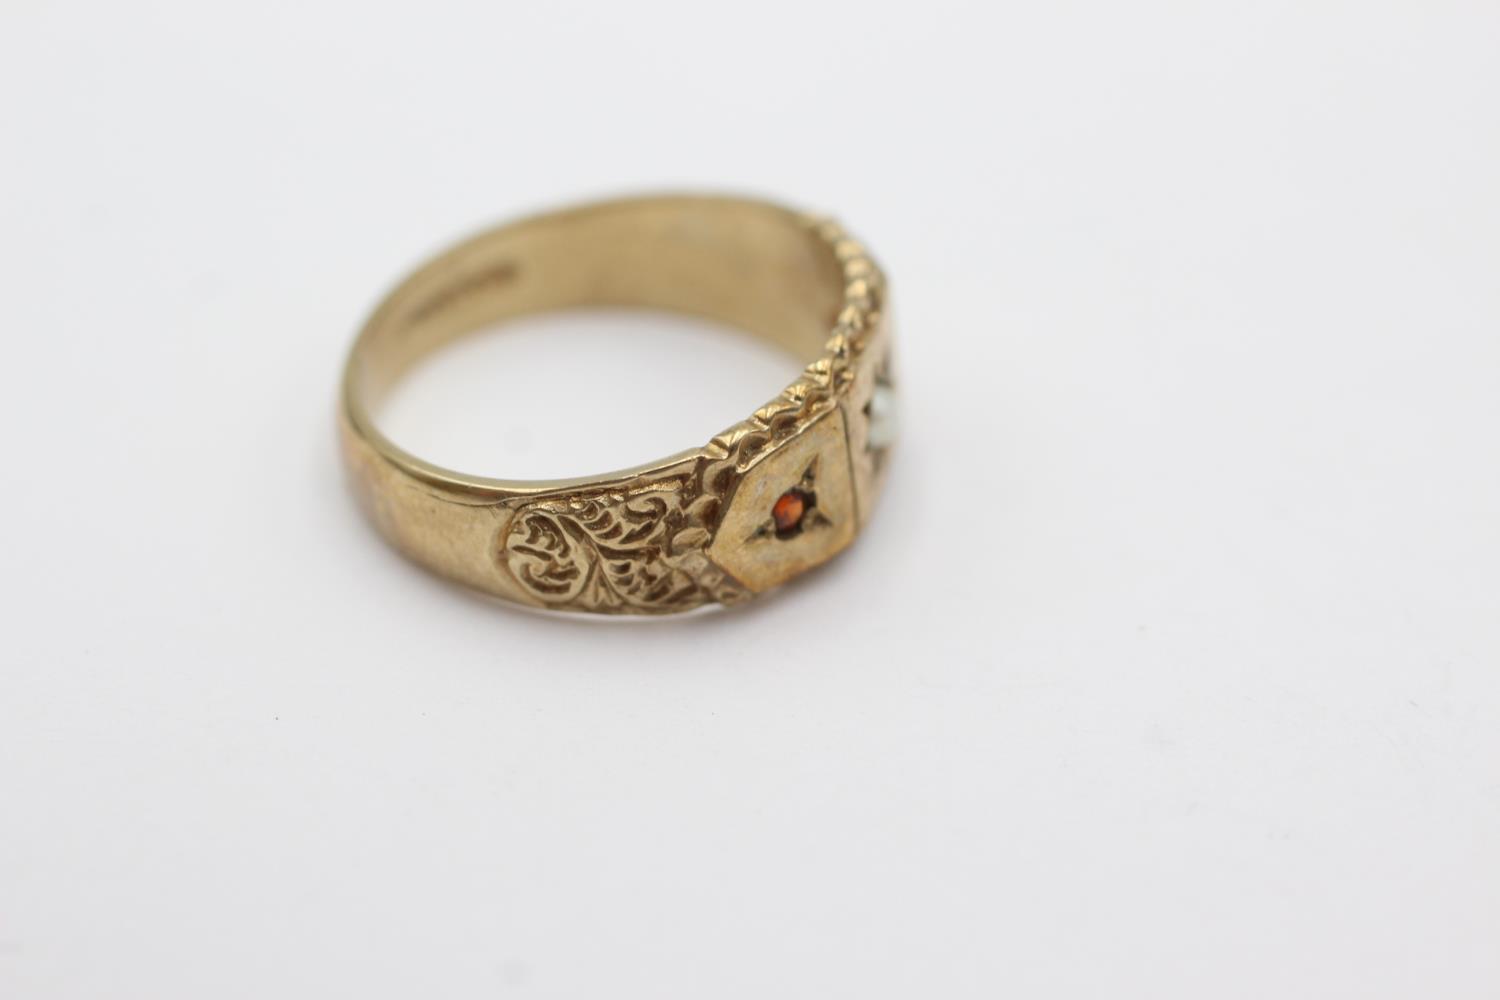 9ct gold garnet & pearl starburst ring (3.7g) Size M - Image 2 of 4